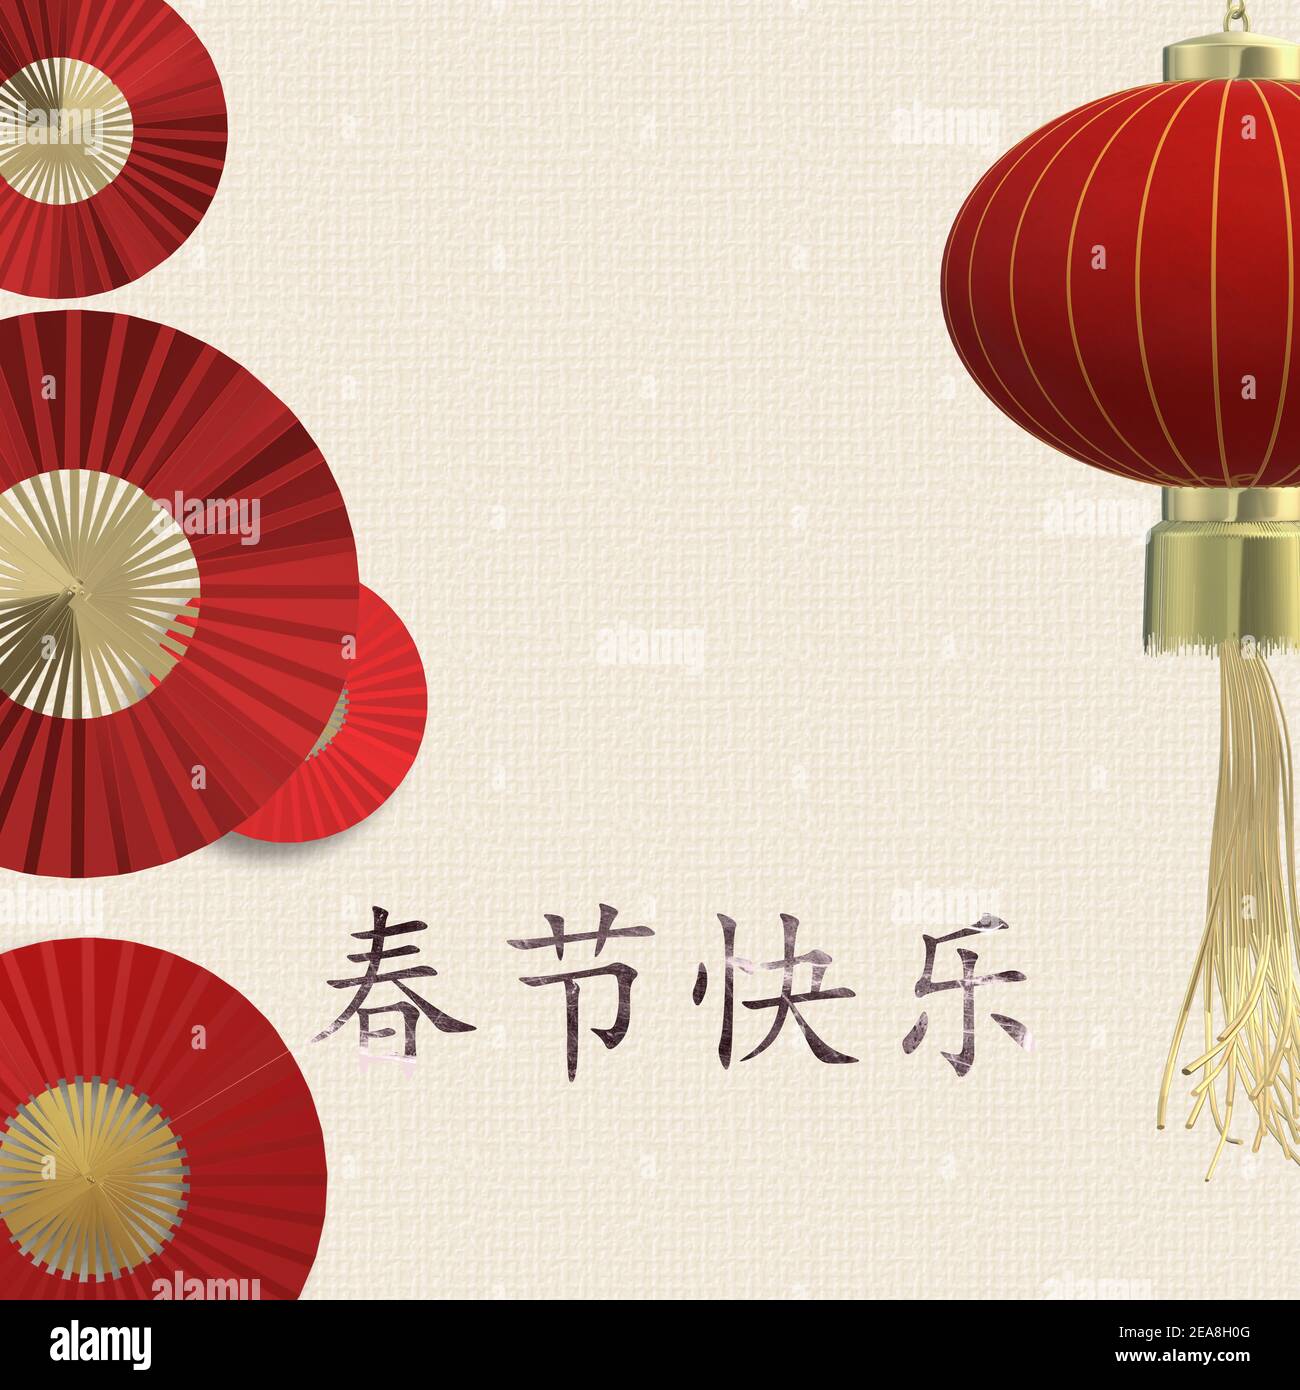 Modèle avec ventilateurs en papier, lanterne chinoise sur fond jaune pastel, nouvel an chinois, arrière-plan. Texte doré traduction en chinois Bonne Année. 3 Banque D'Images